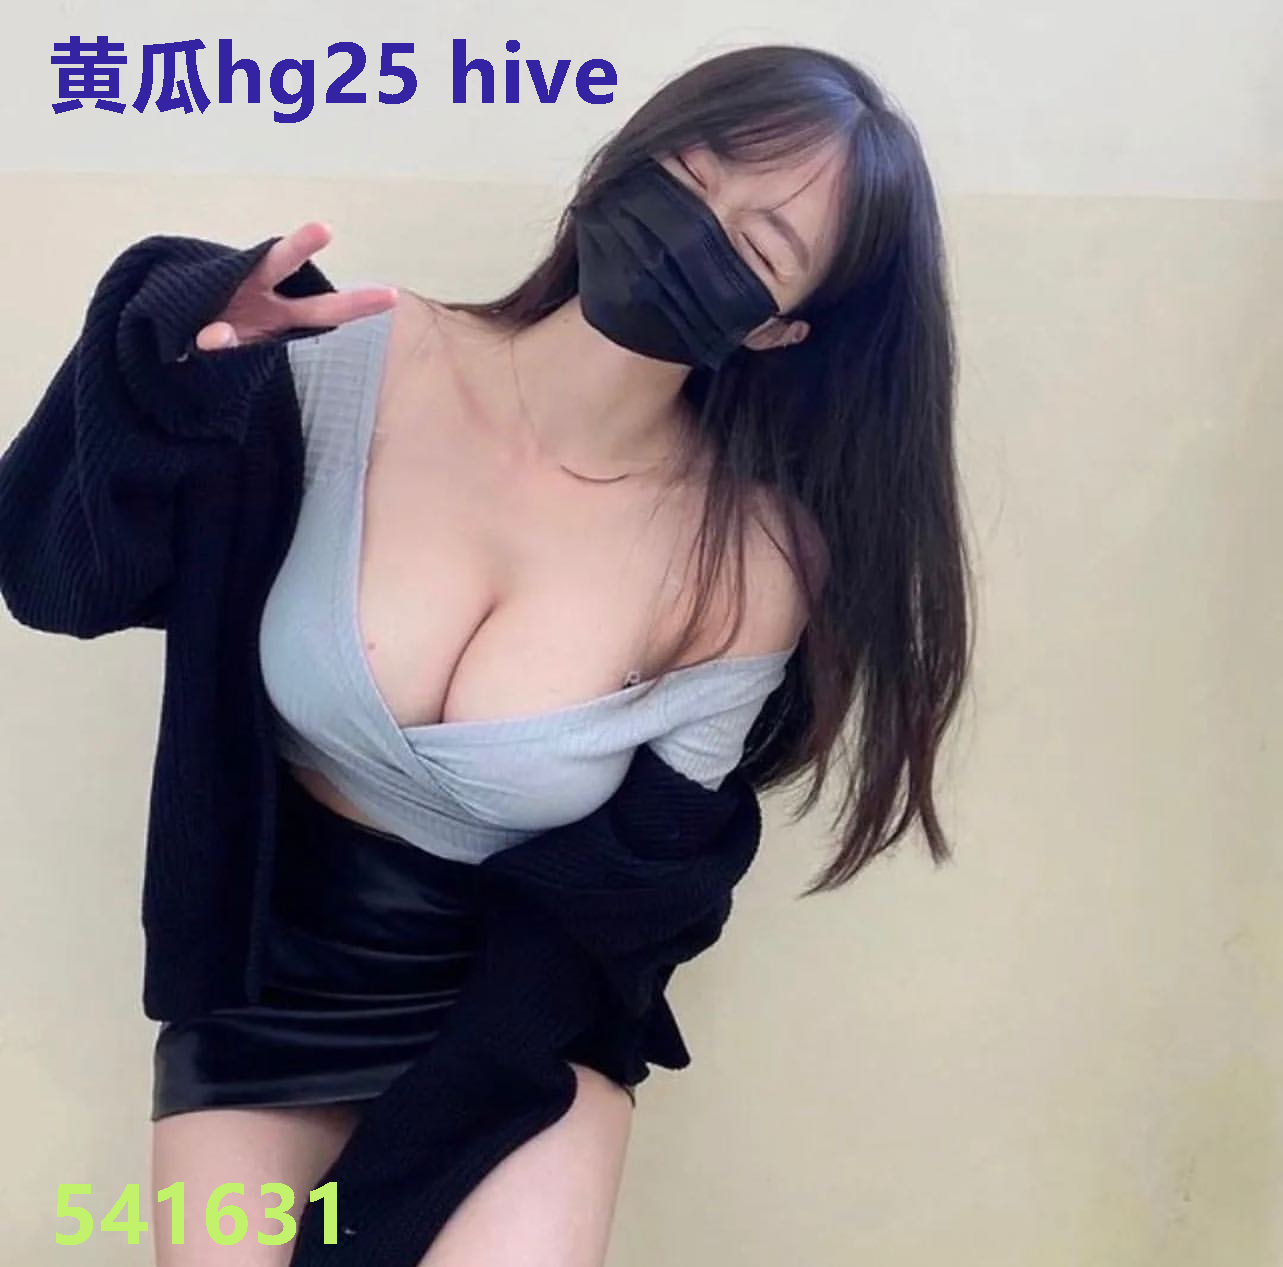 黄瓜hg25 hive